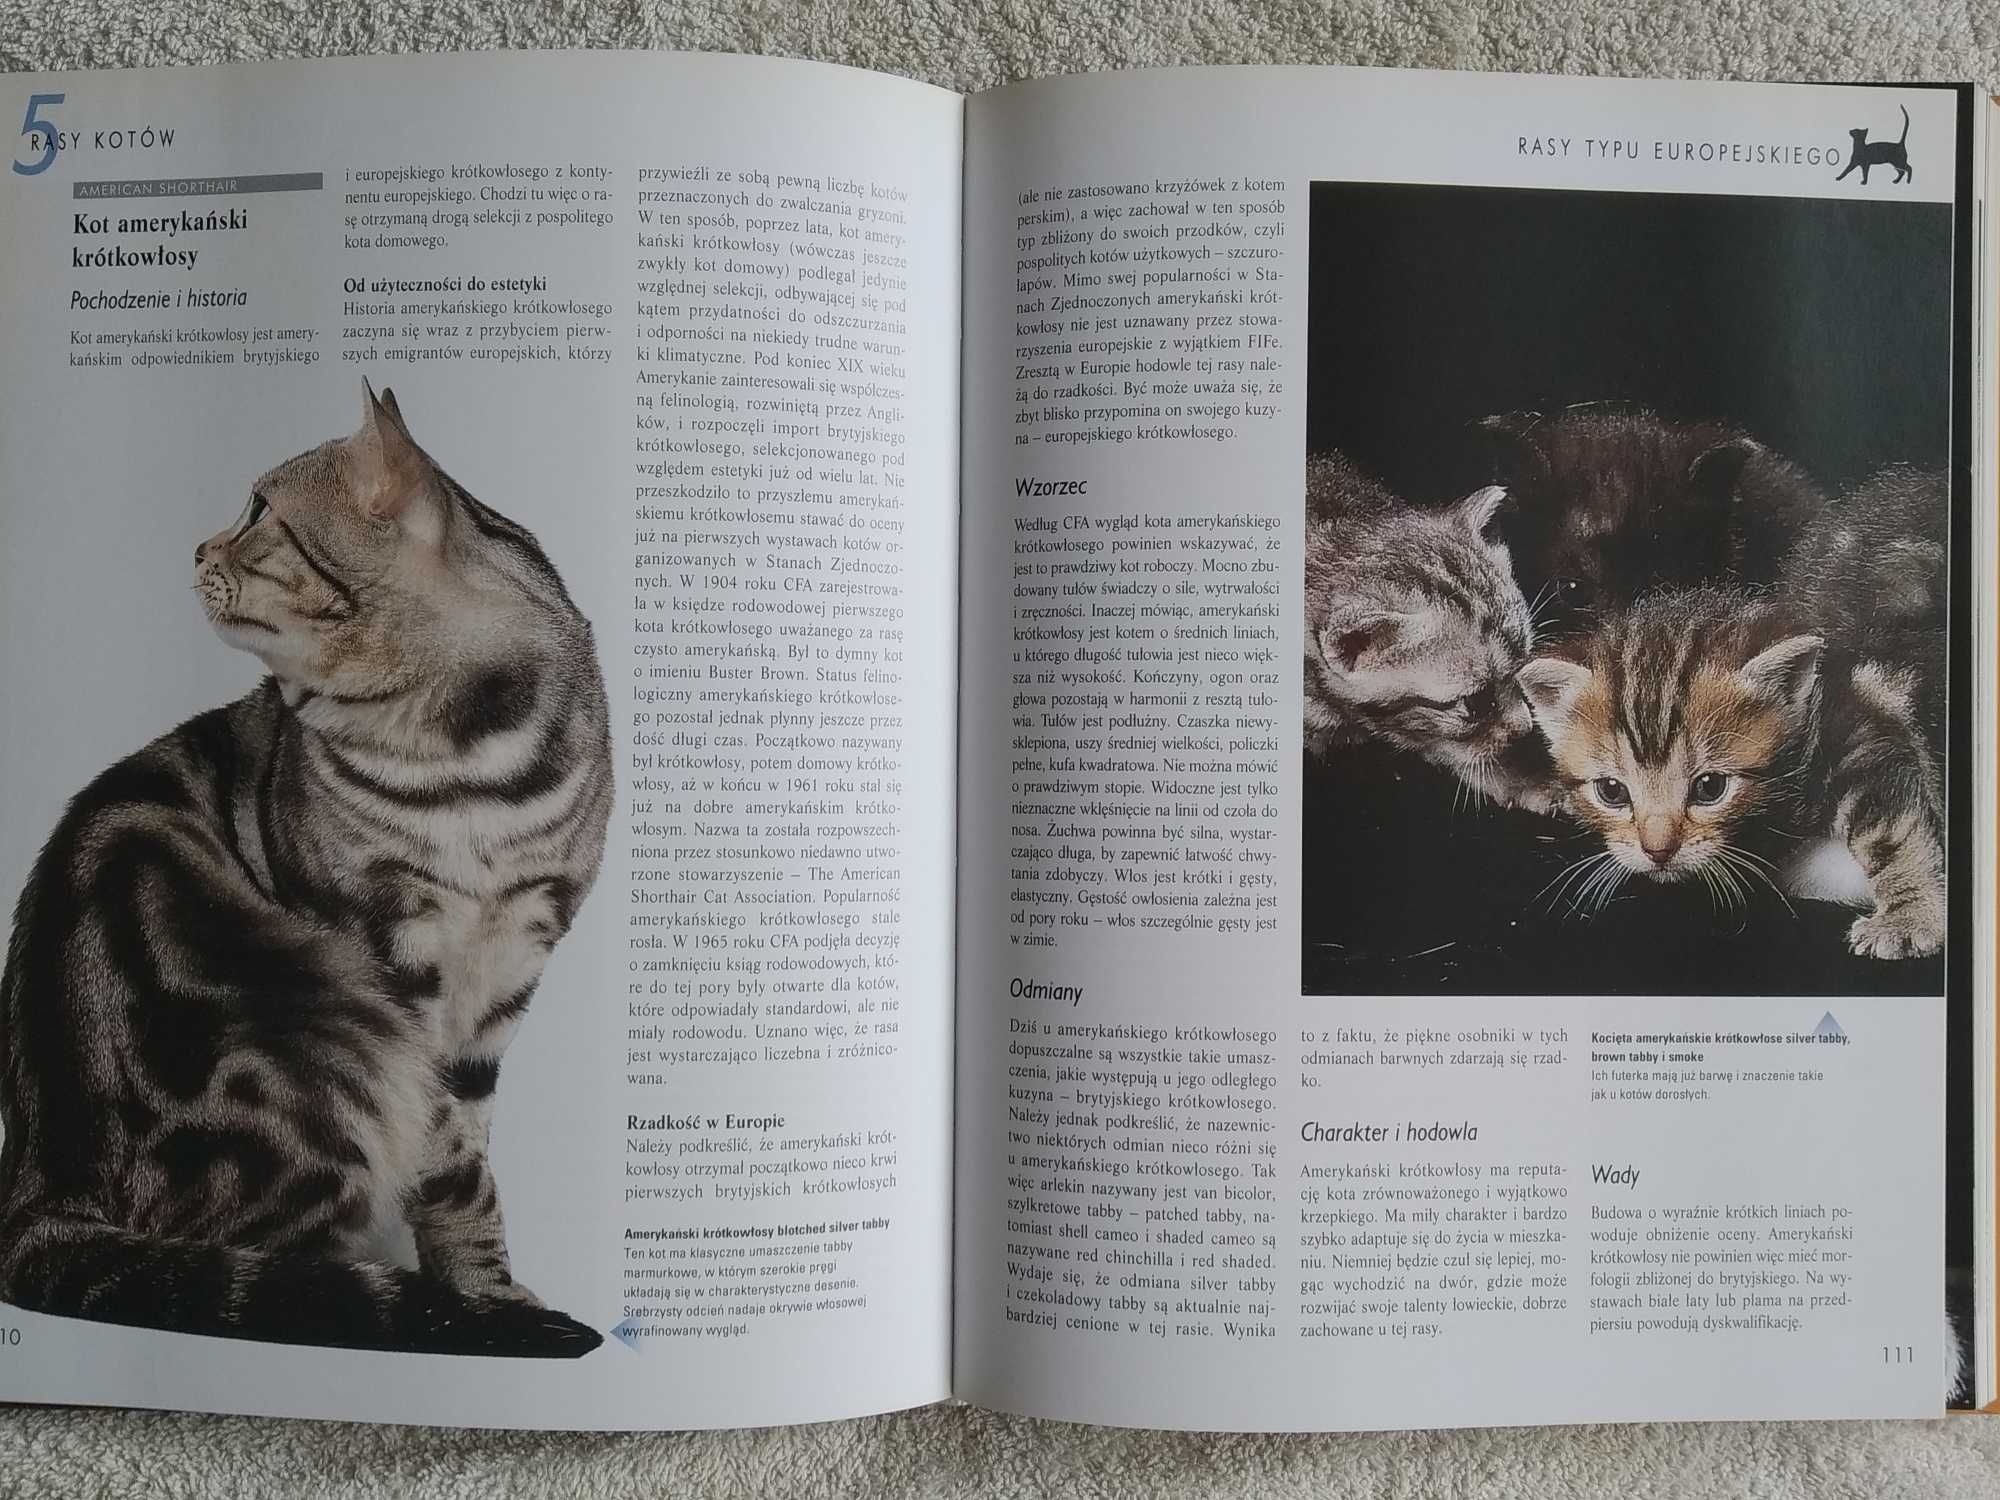 Koty poradnik encyklopedyczny